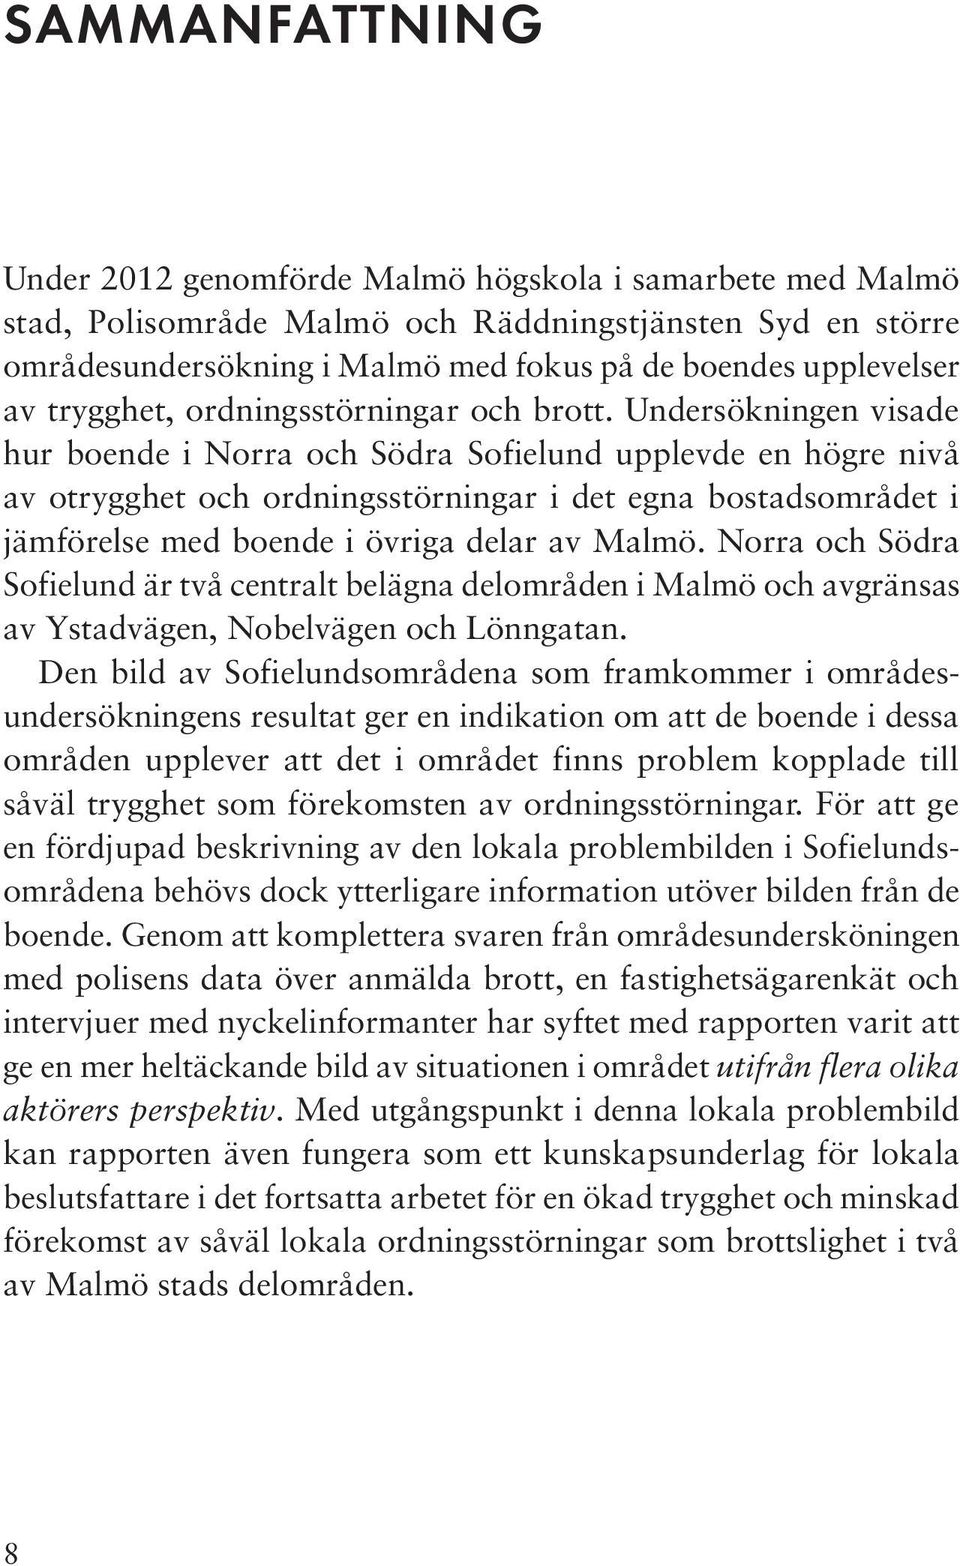 Undersökningen visade hur boende i Norra och Södra Sofielund upplevde en högre nivå av otrygghet och ordningsstörningar i det egna bostadsområdet i jämförelse med boende i övriga delar av Malmö.